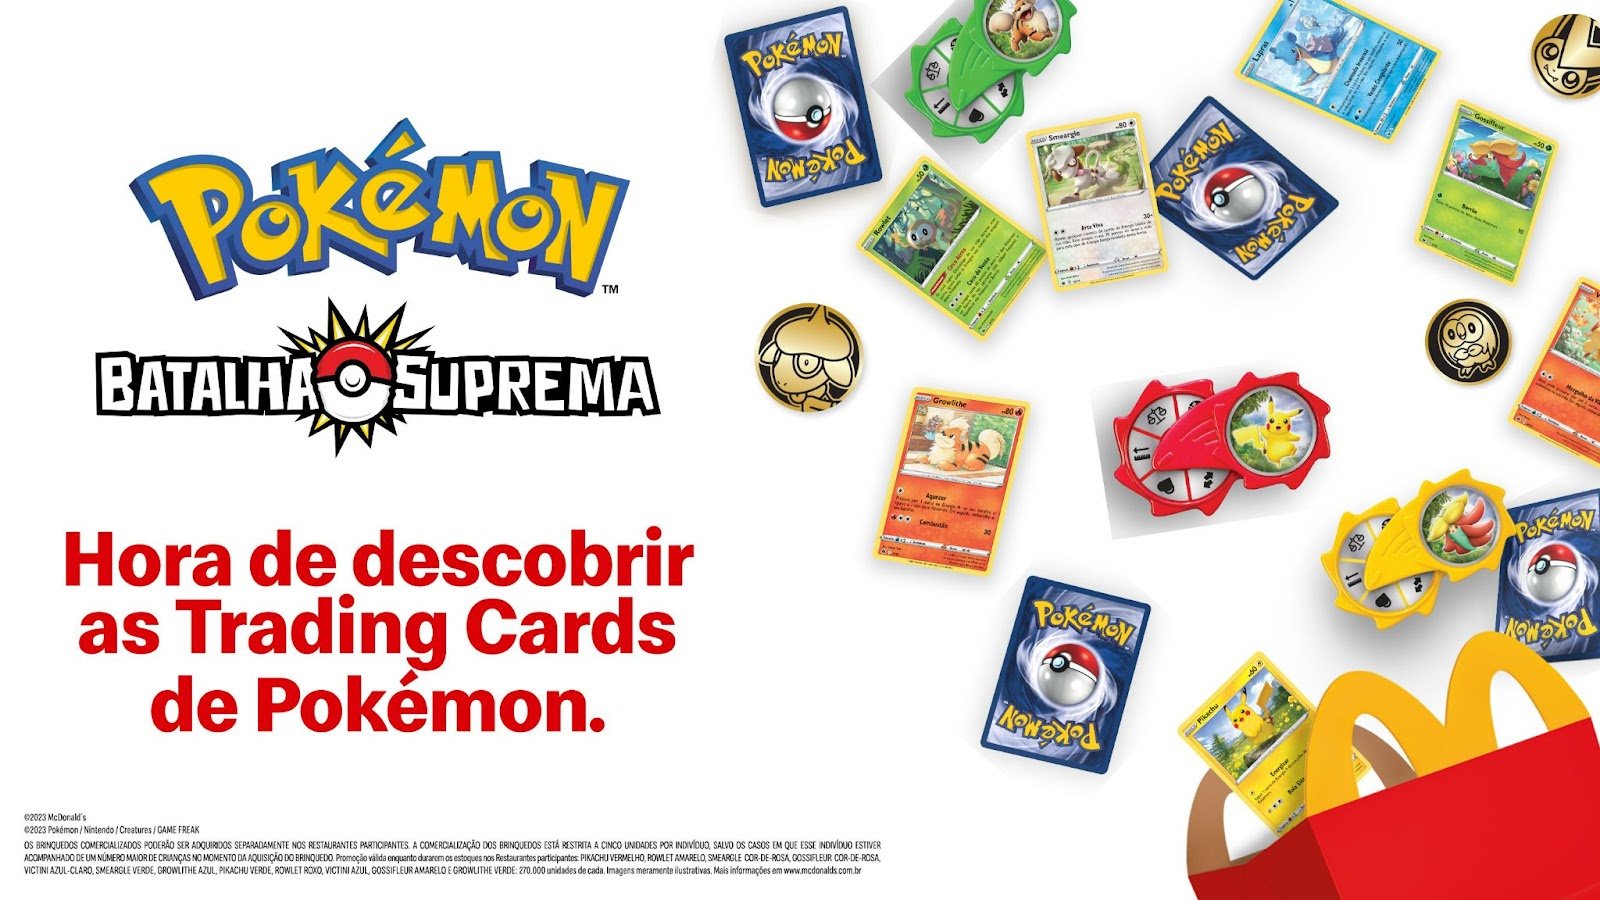 Chamada de Batalha Suprema, a campanha aposta no veterano Pokémon Trading Card Game para conquistar os clientes